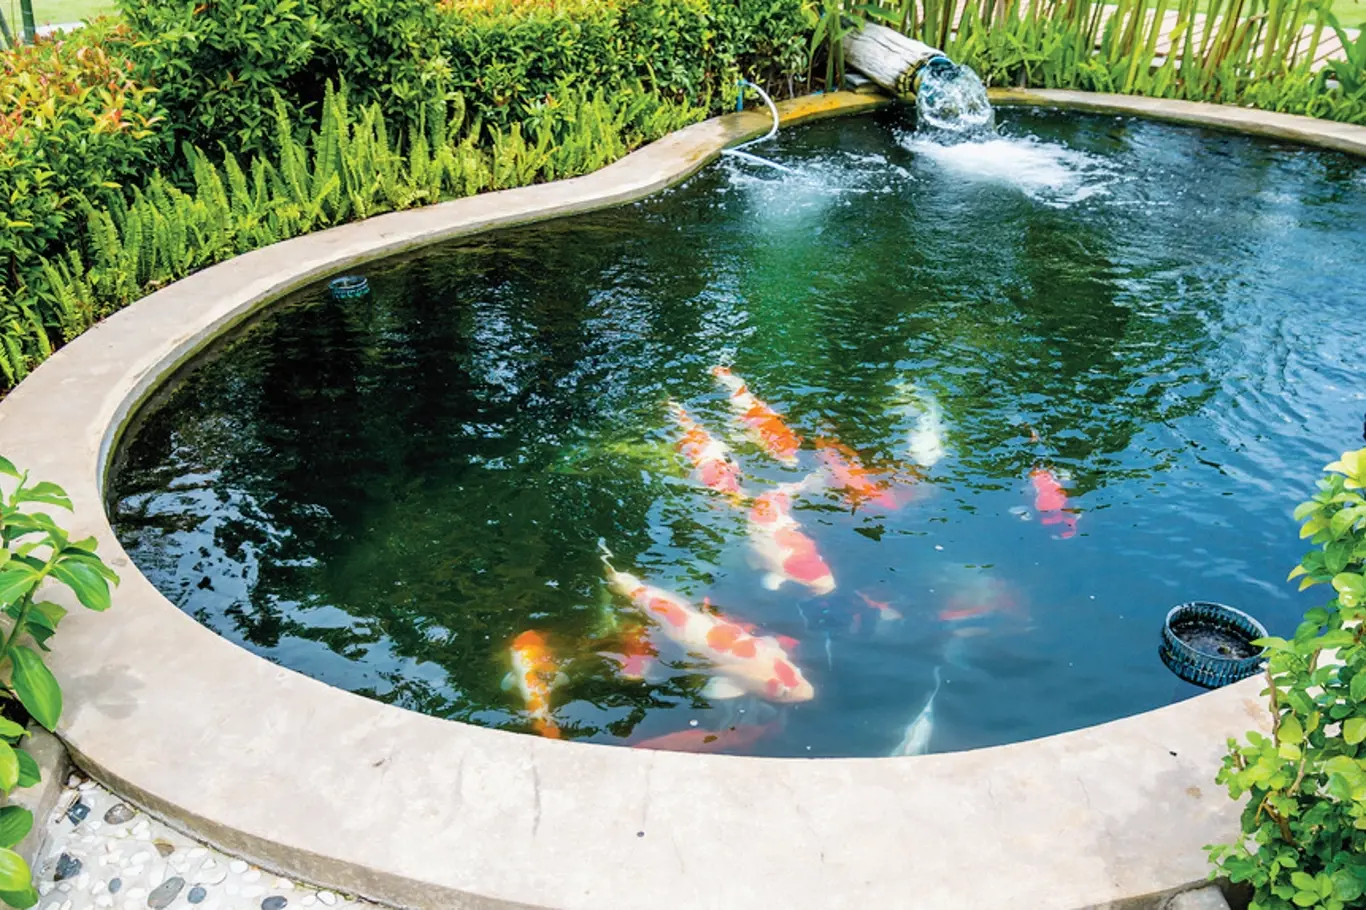 Chováte v zahradním jezírku ryby?